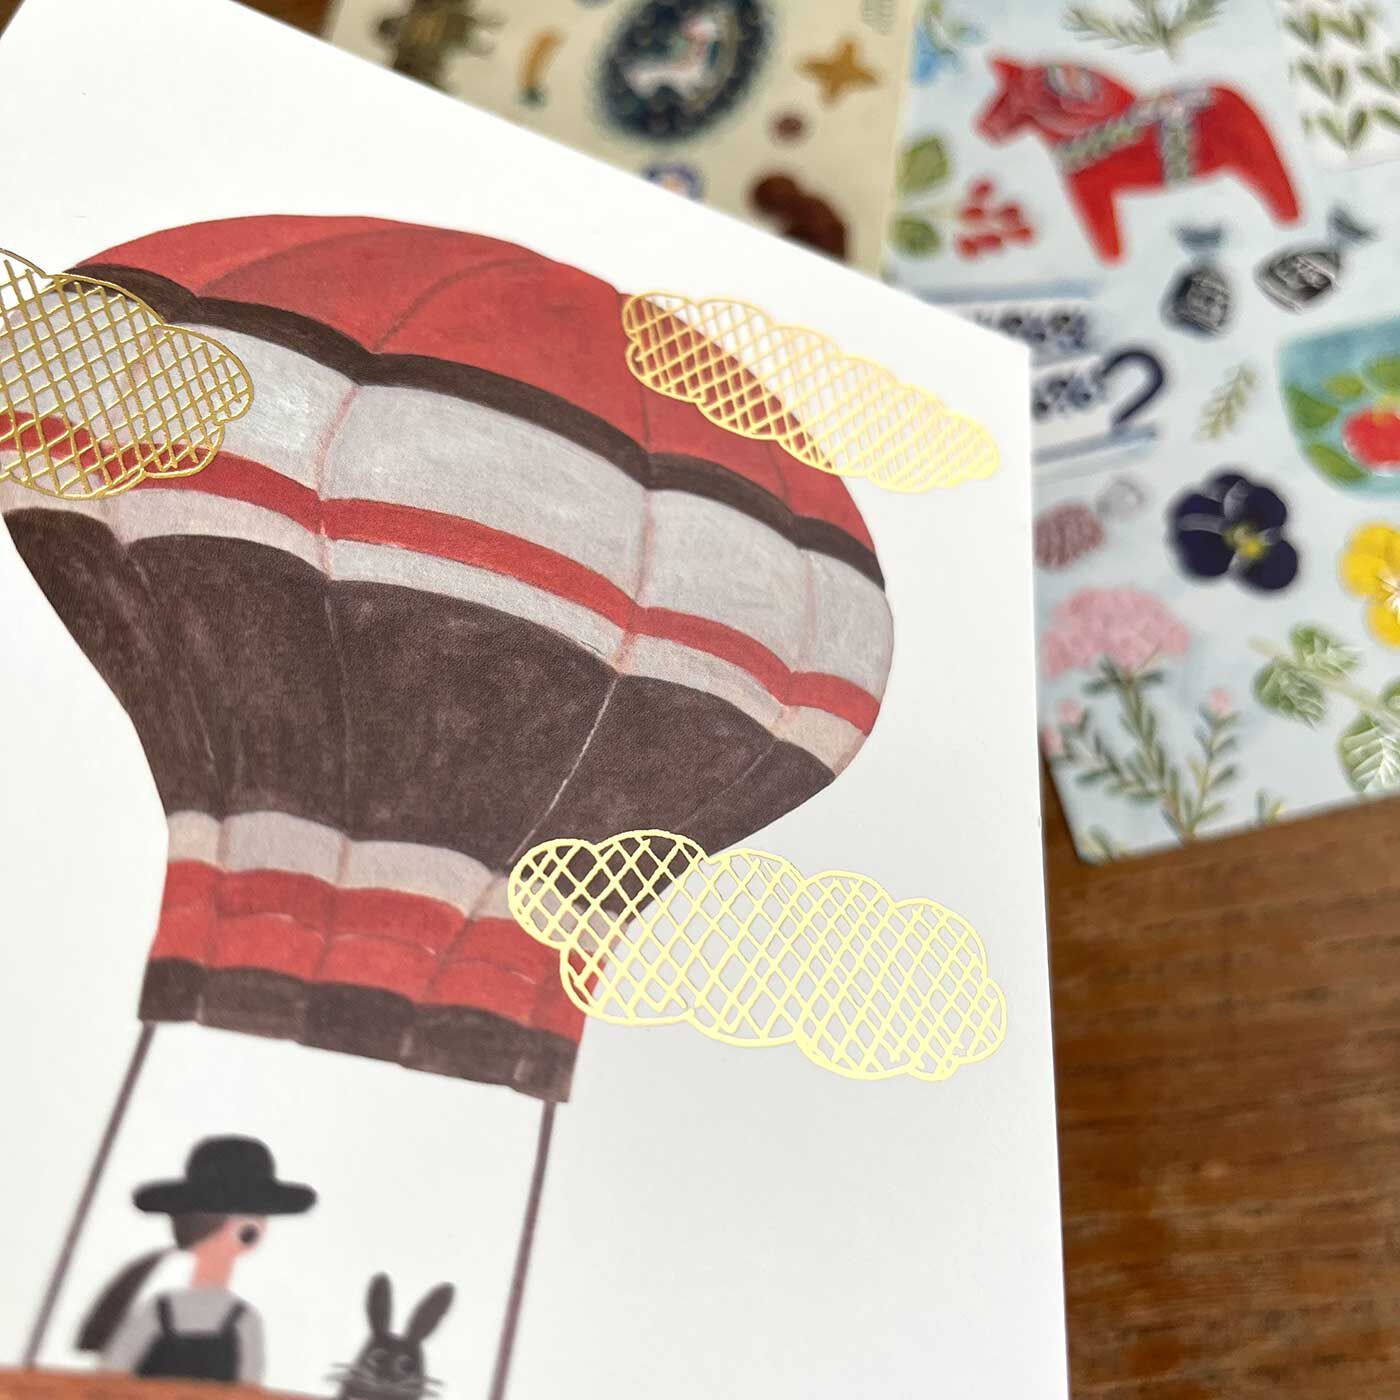 フェリシモの雑貨 Kraso|cozyca products 人気の紙もの文具３点セットの会|【ポストカード】イラストに箔押しが輝く、存在感のある美しいポストカード。作品として飾って楽しむのもいいなぁ。額縁に入れても素敵。